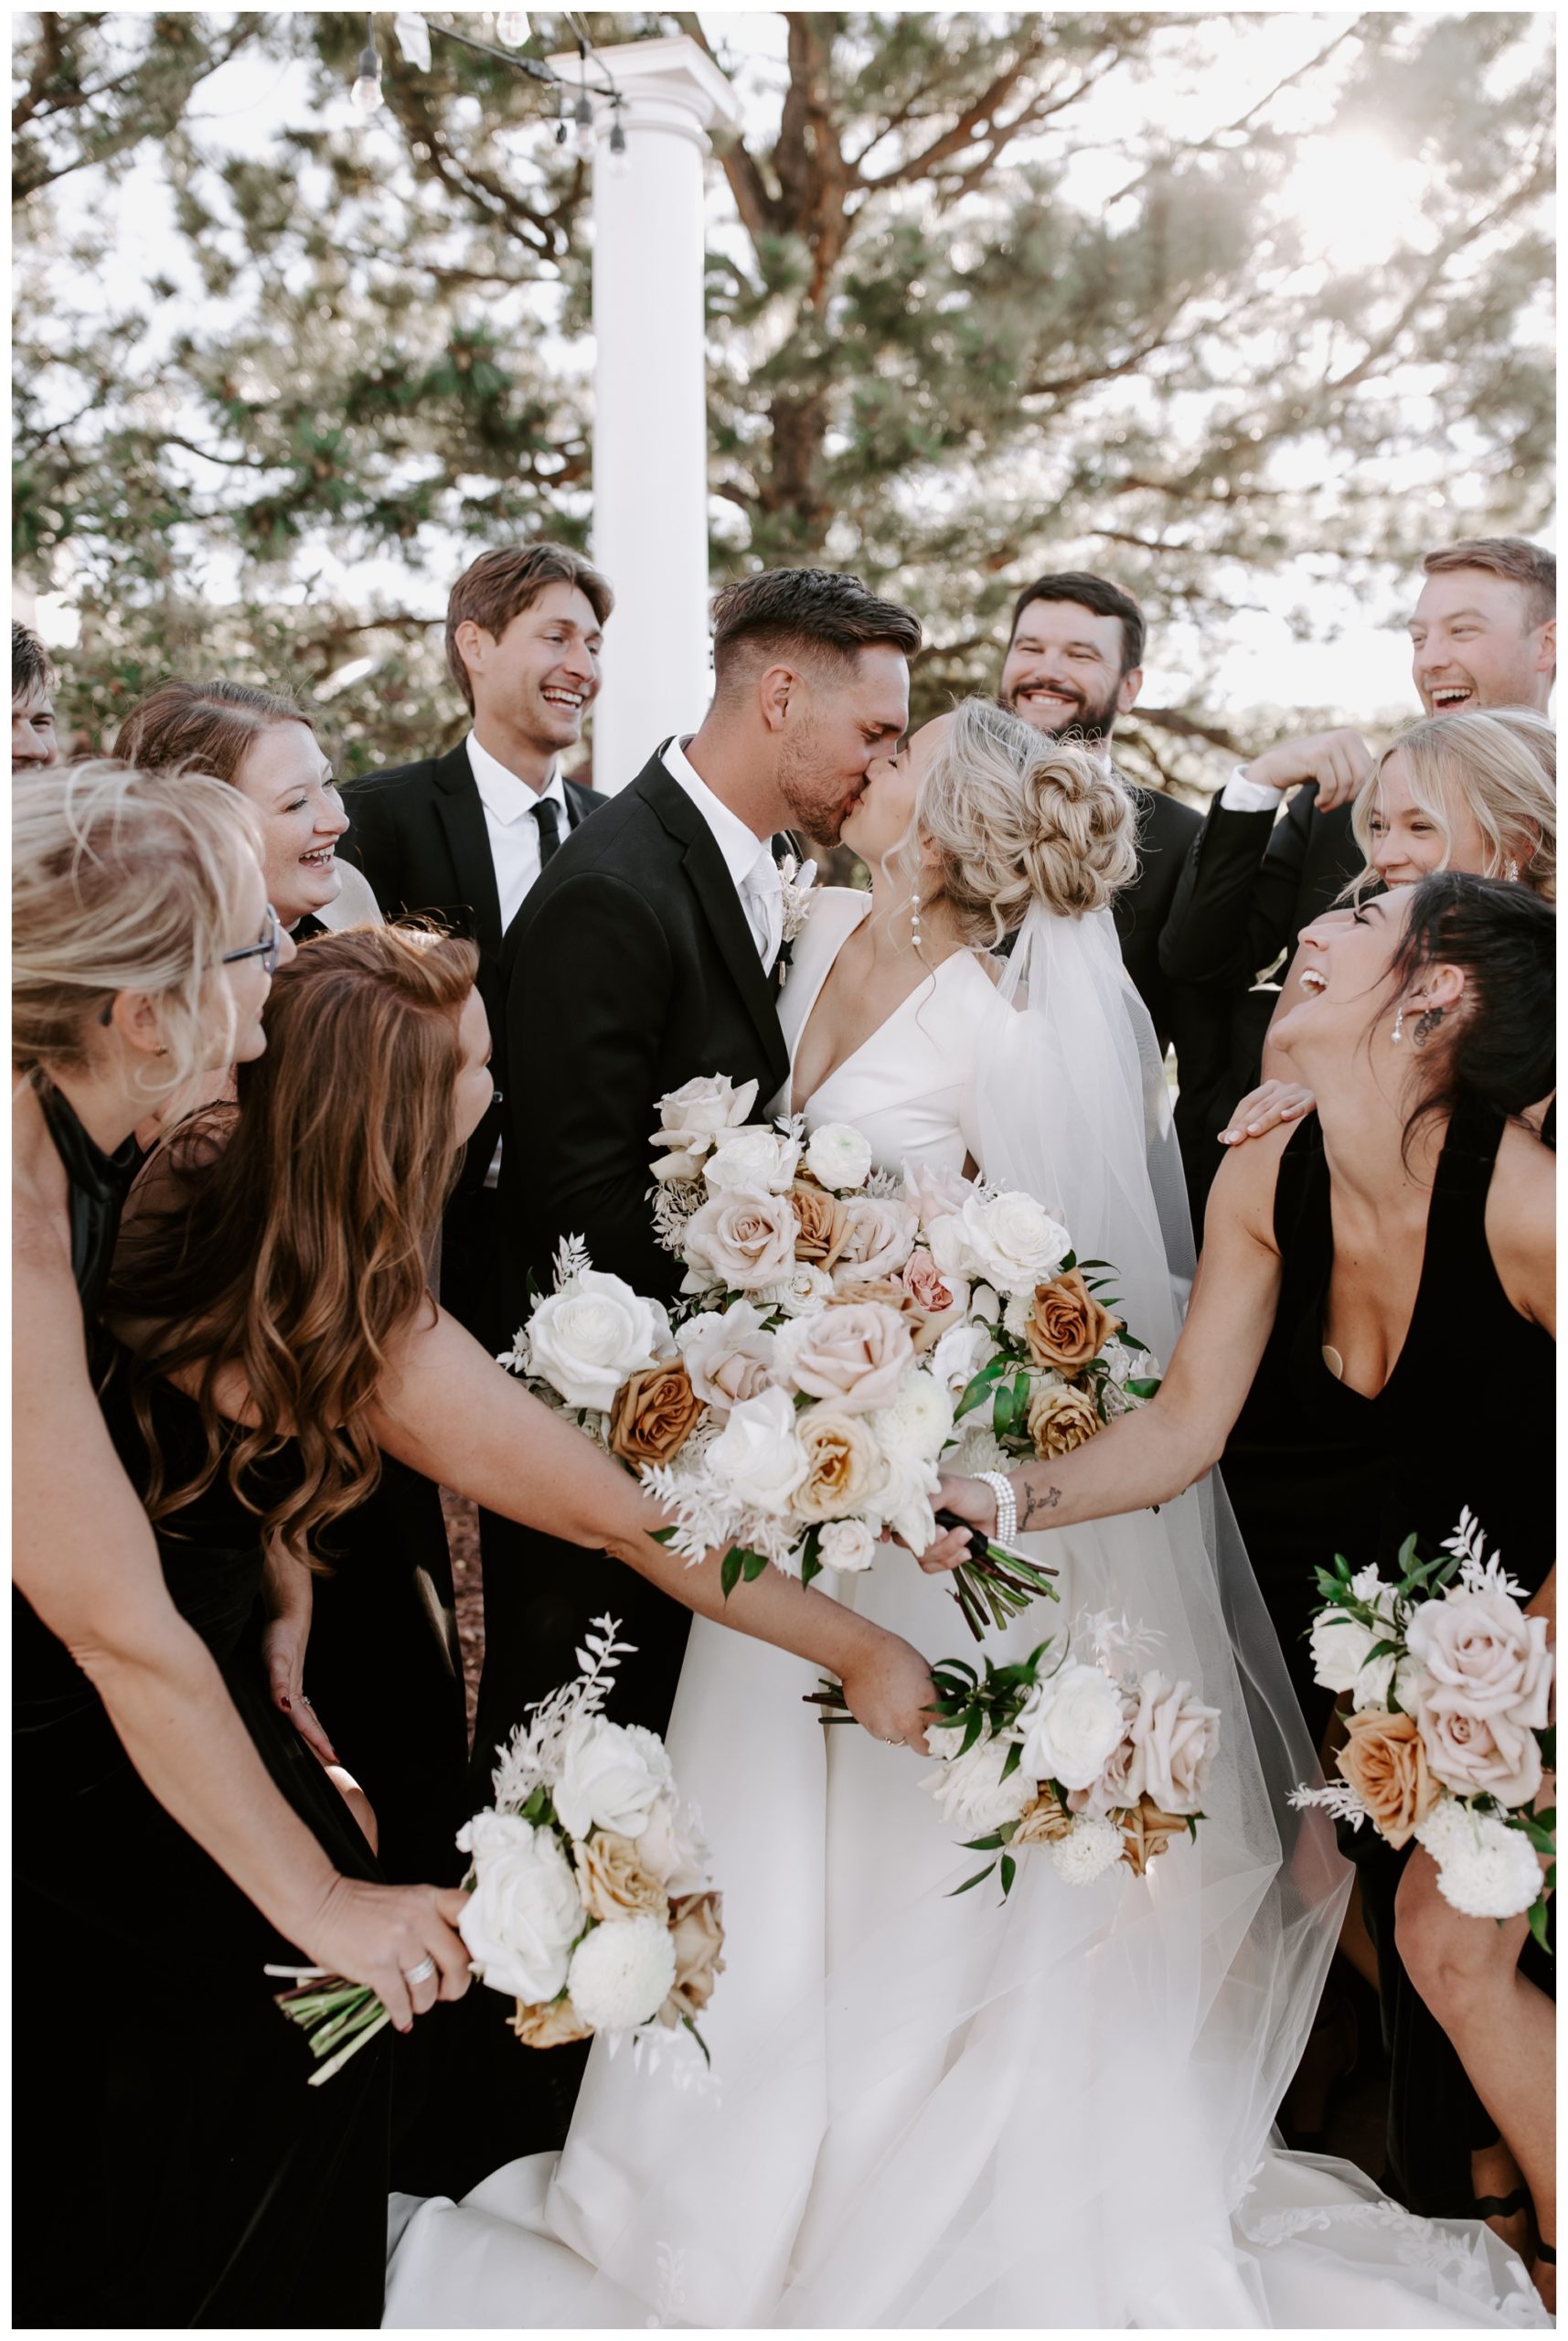 Colorado wedding photographer